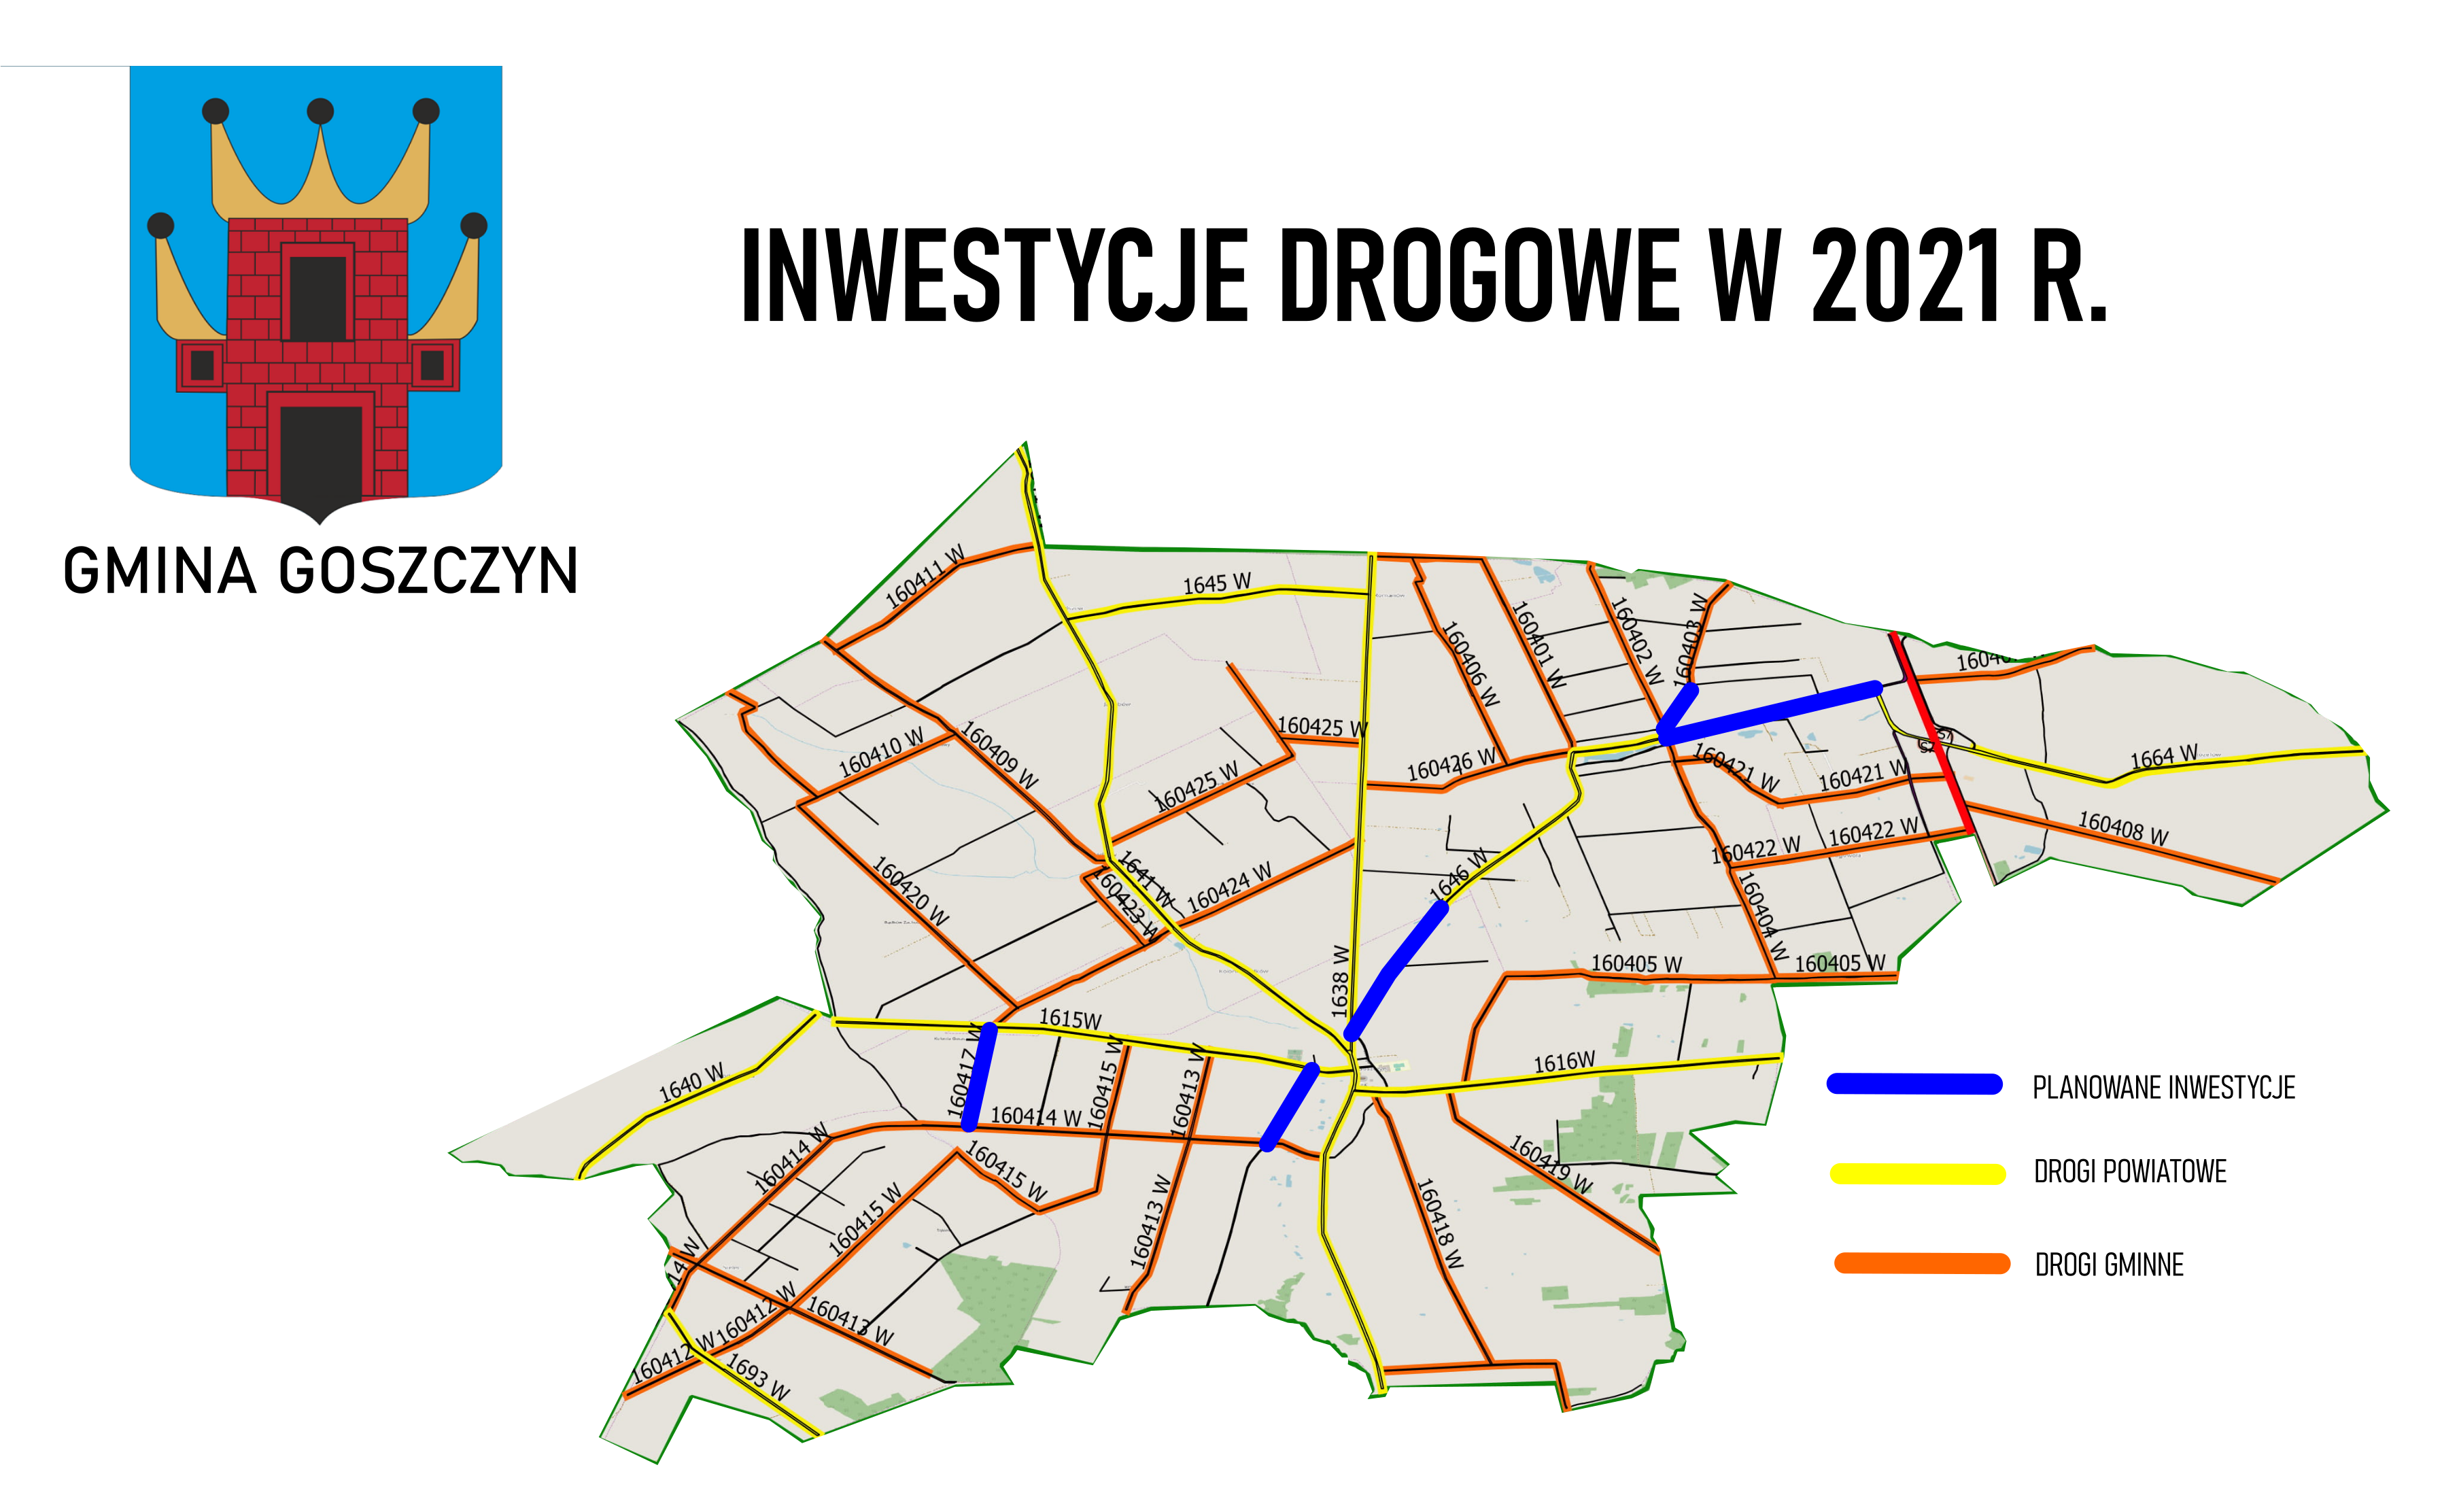 inwestycje_drogowe_2021.png (2.53 MB)